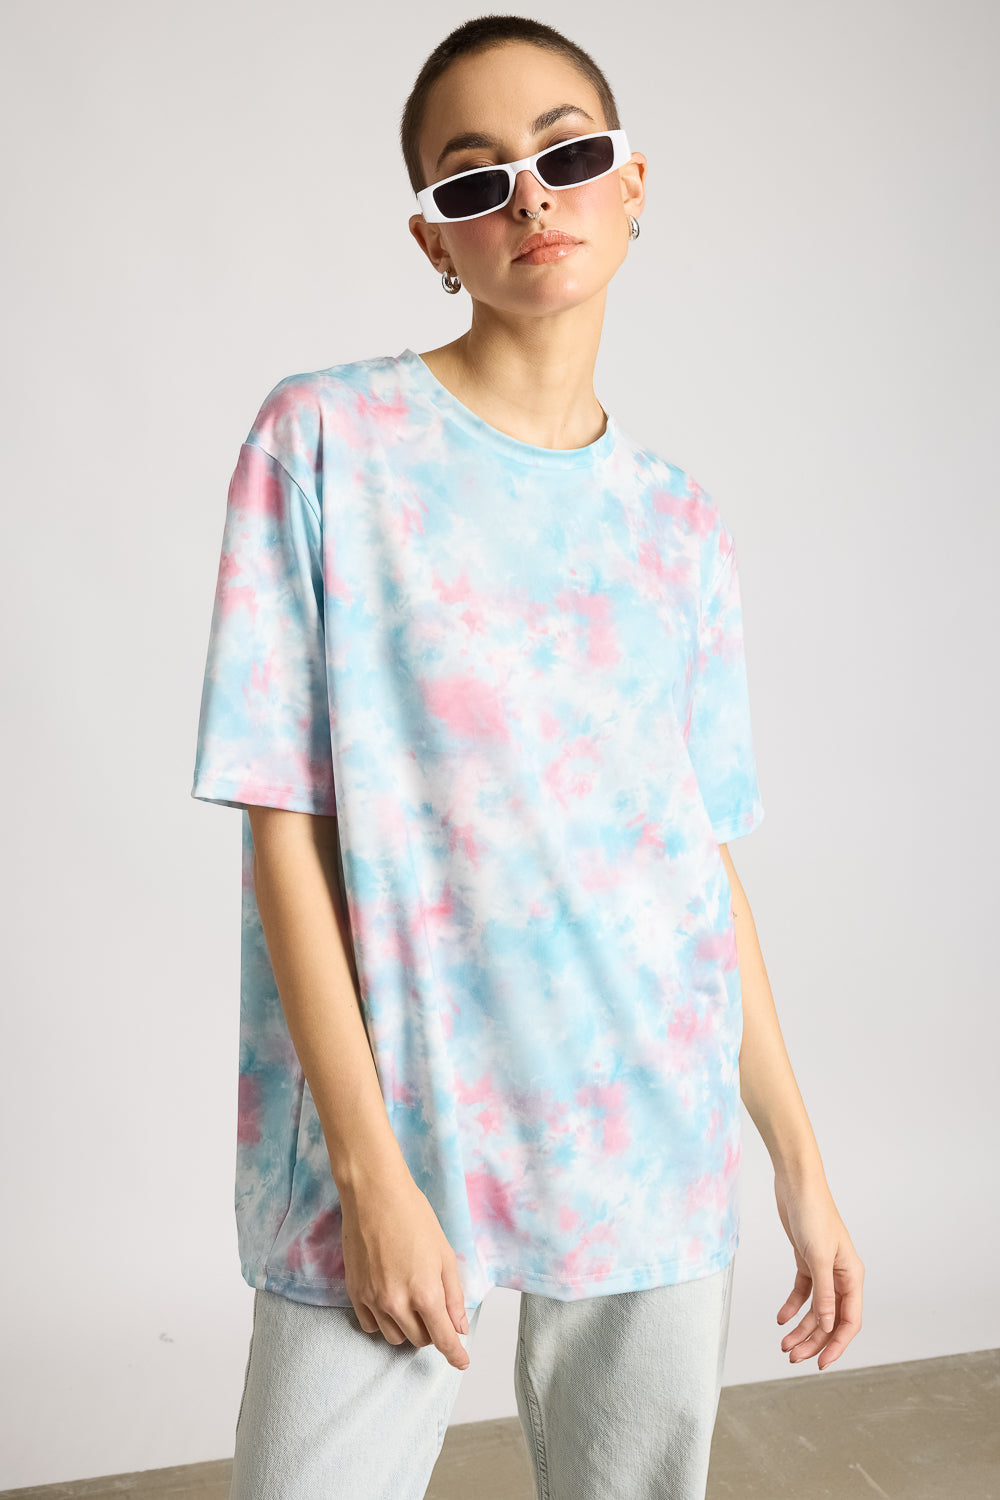 AOP Women's T-shirt - Tie Dye Effect